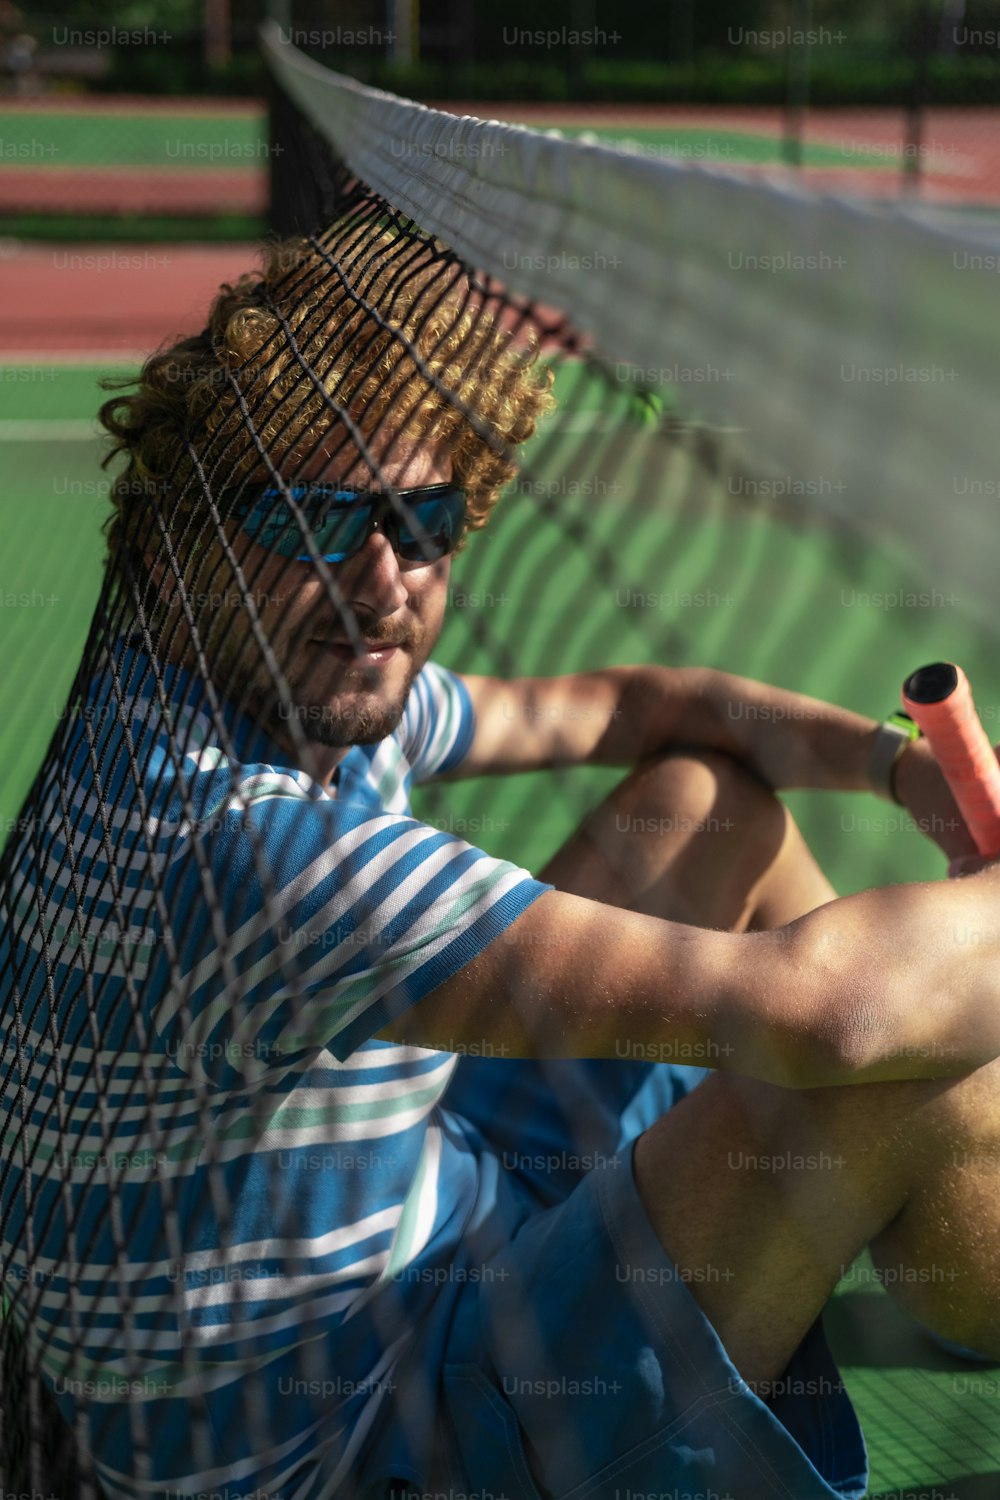 Ein Mann, der auf einem Tennisplatz sitzt und einen Schläger hält